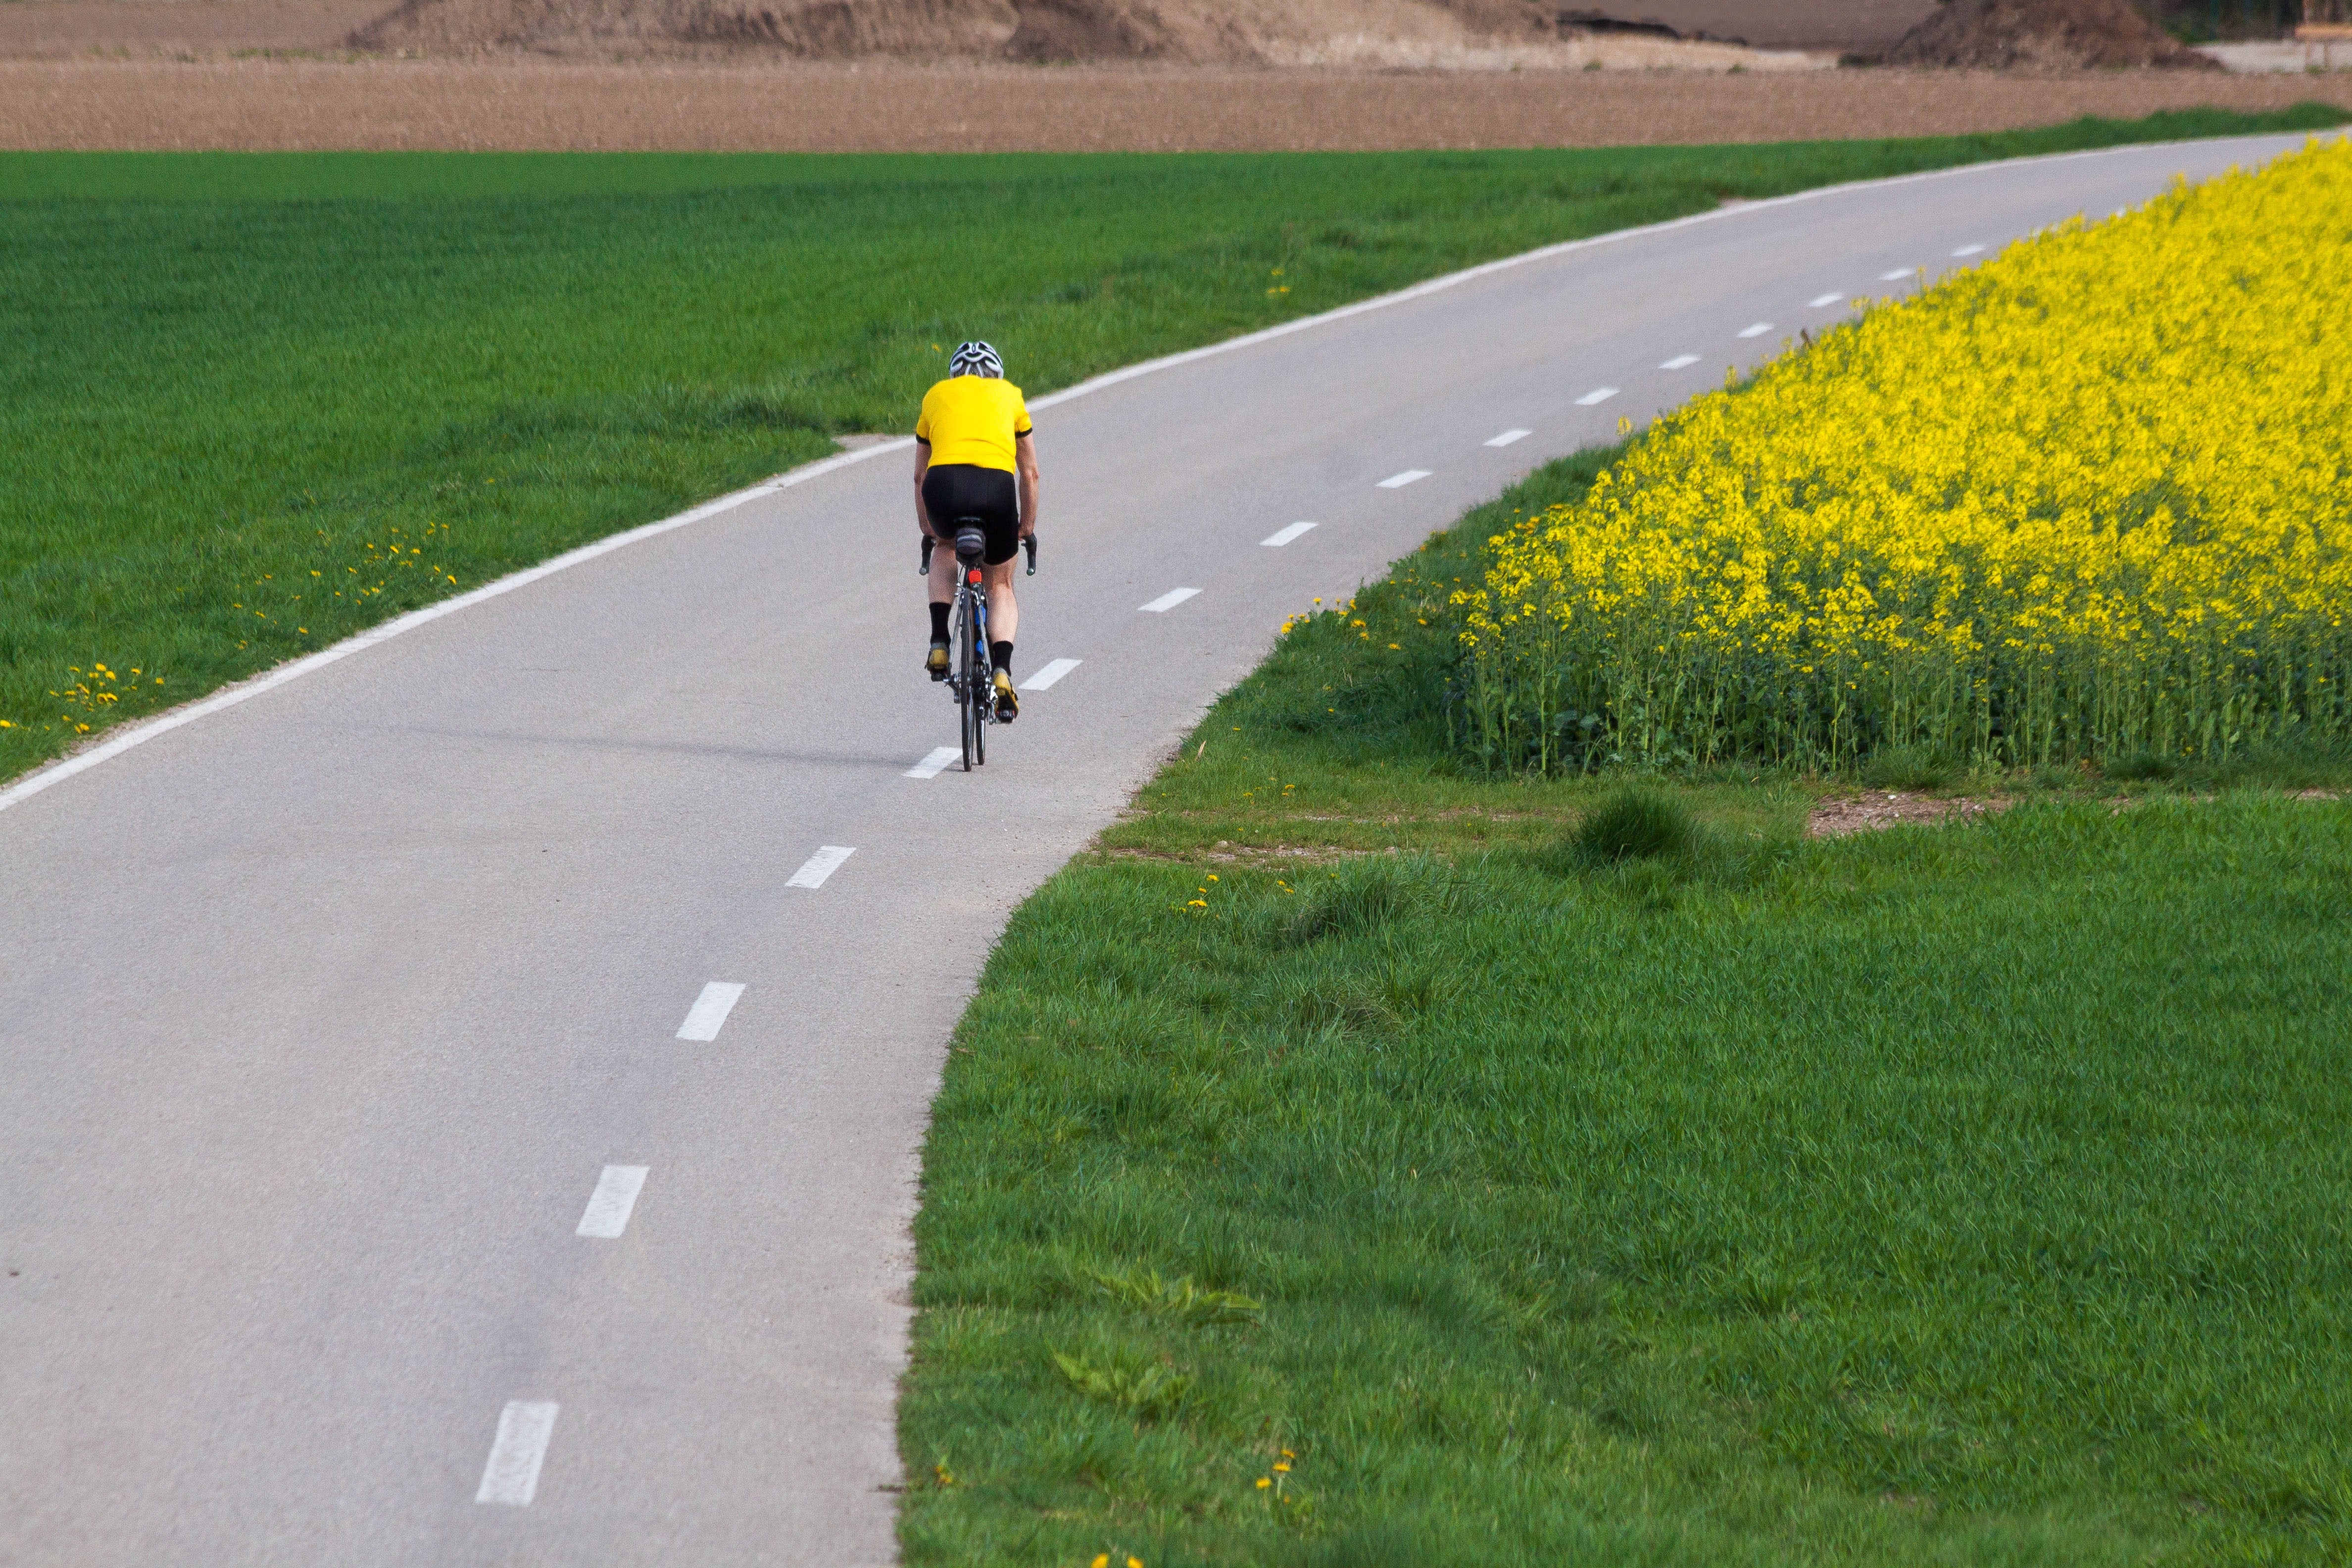 Догнать велосипед. Велосипед на дороге. Велосипедист. Велосипед едет по дороге. Велосипедист по дороге.